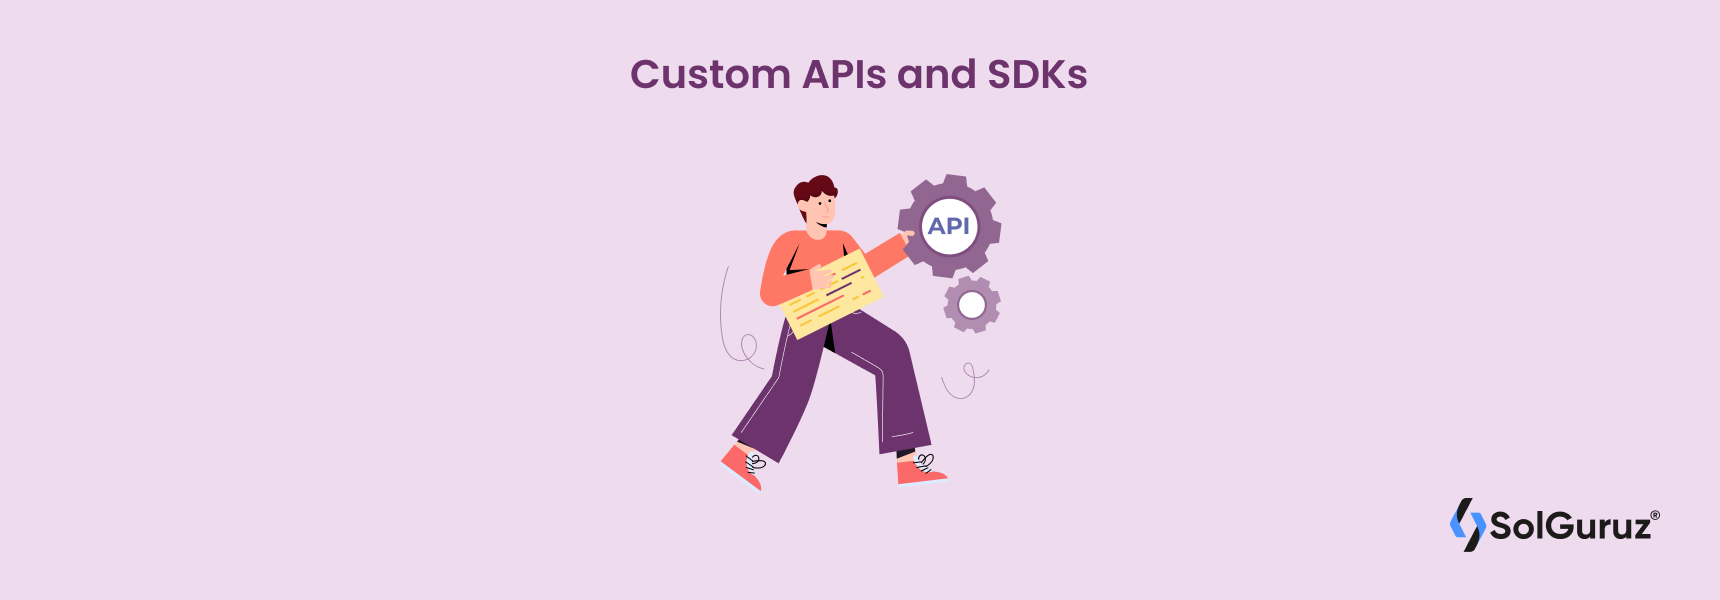 Custom APIs and SDKs